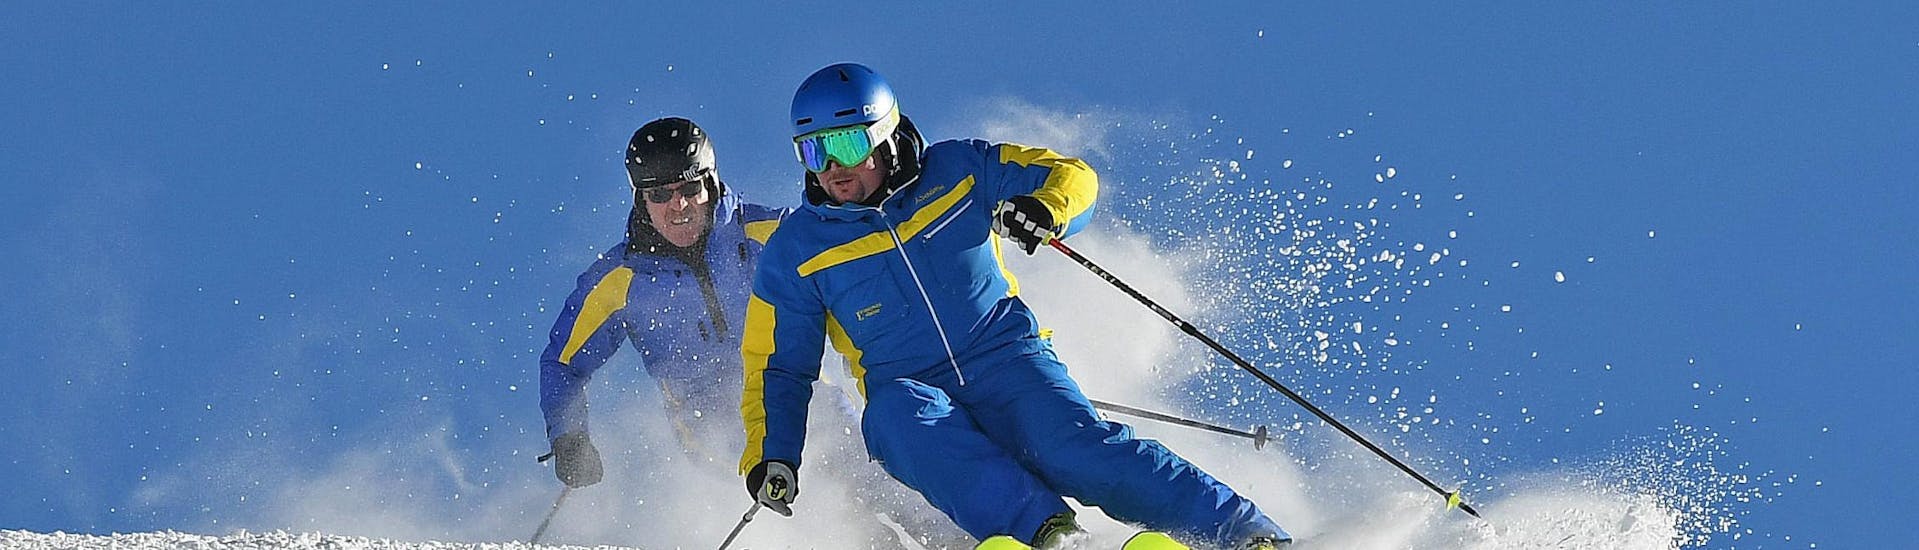 Cours de ski Adultes - Avancé.